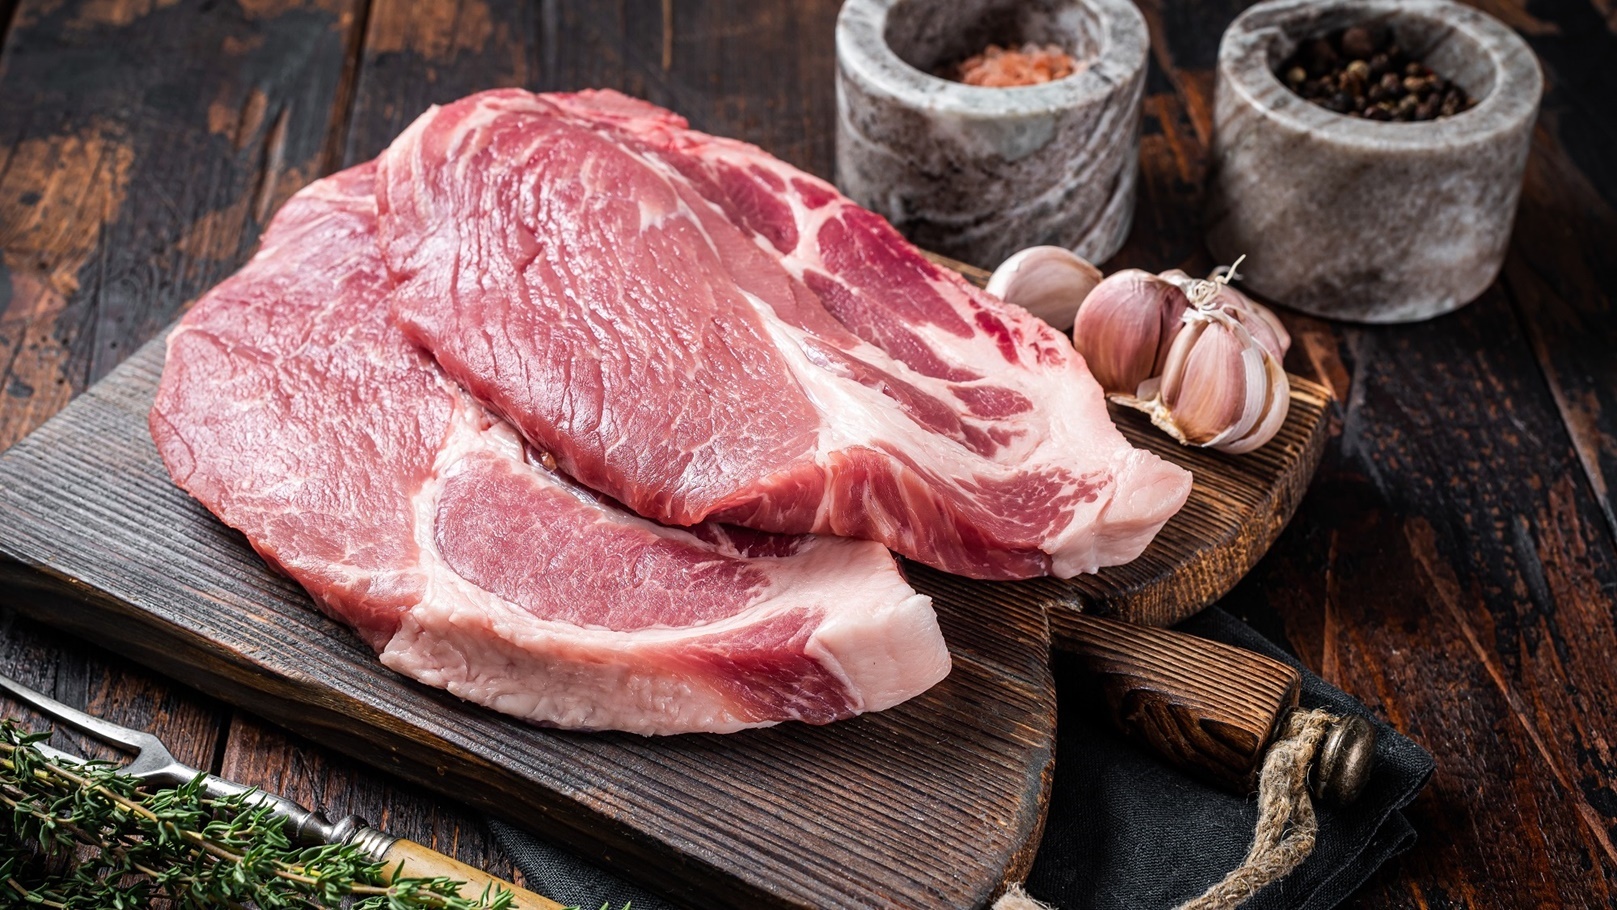 butcher-raw-pork-steak-from-raw-neck-fillet-meat-o-2021-12-15-20-52-21-utc